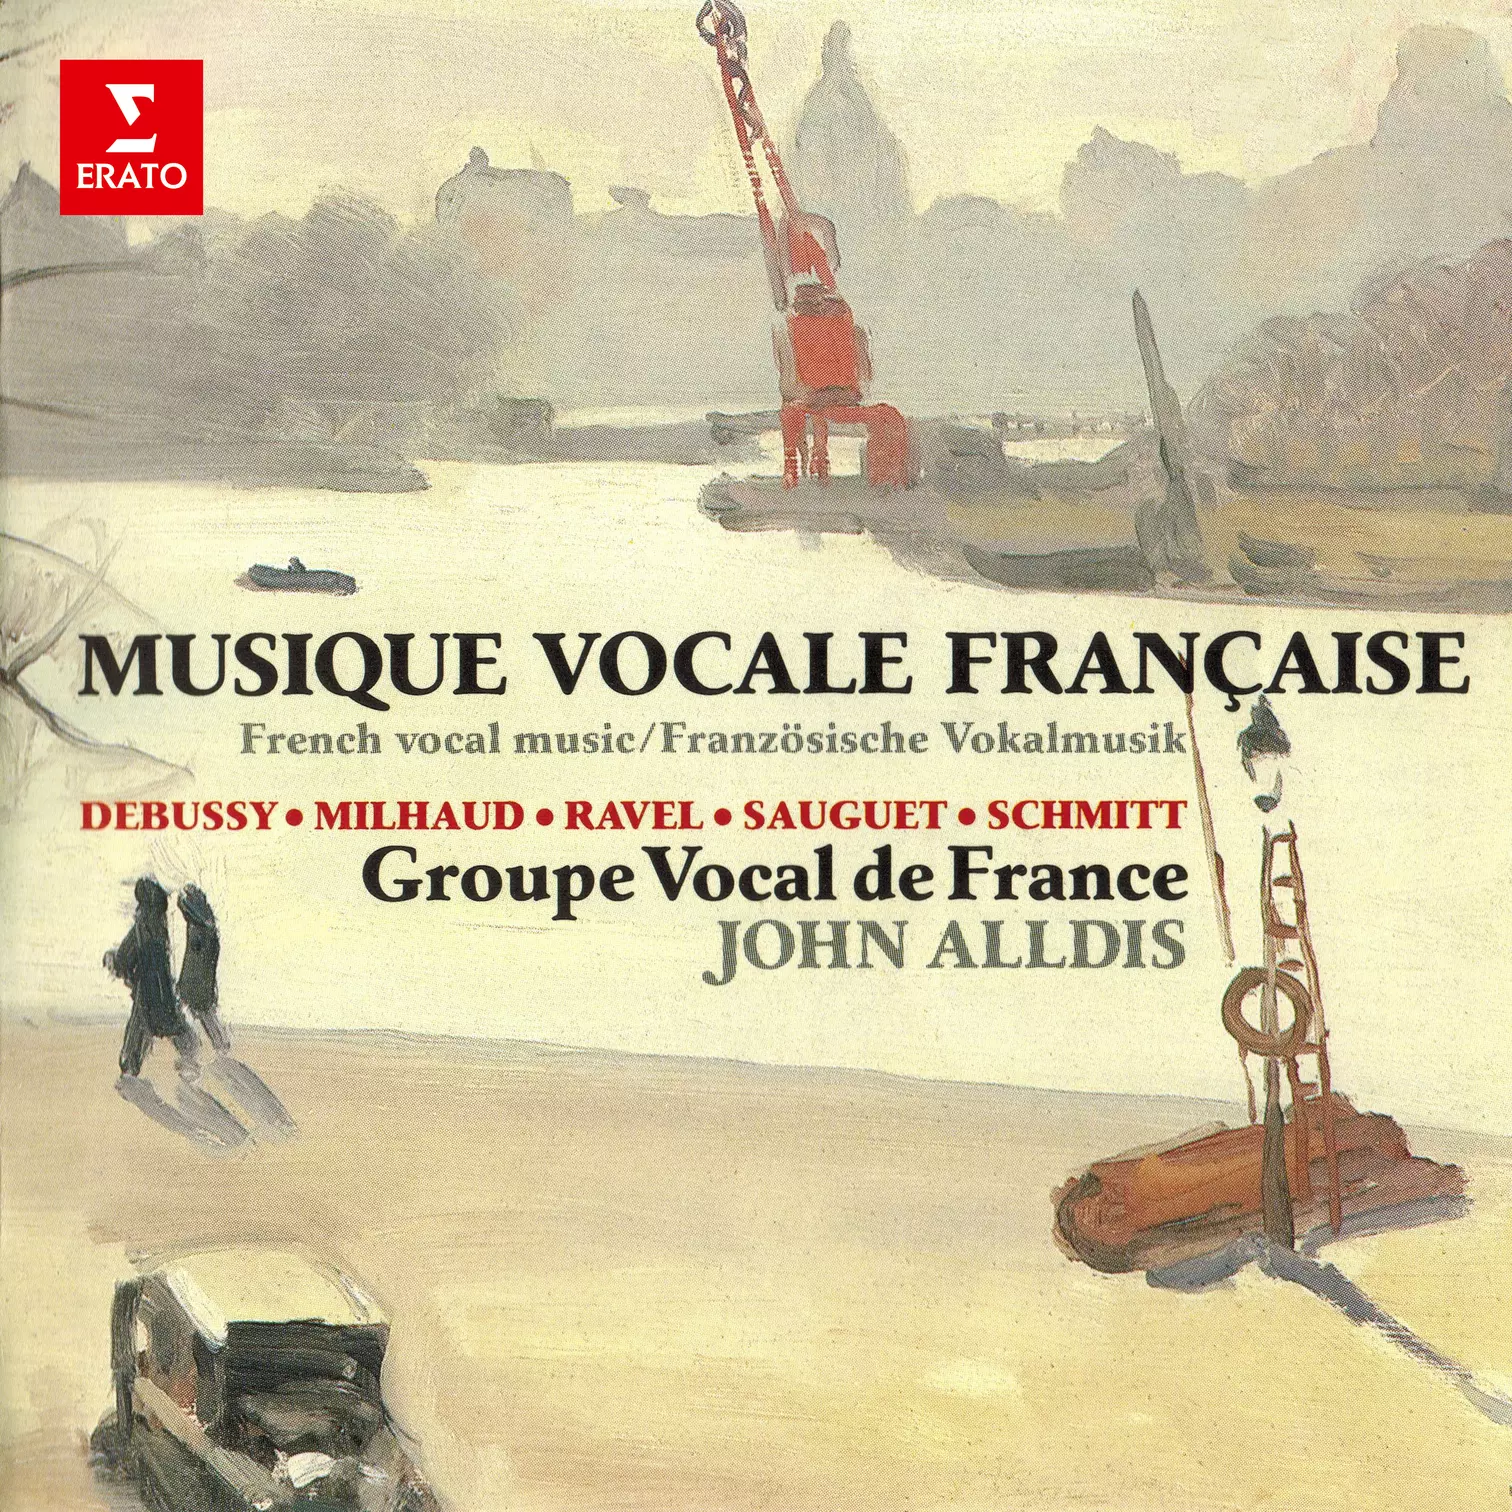 Musique vocale française: Ravel, Debussy, Sauguet, Schmitt & Milhaud